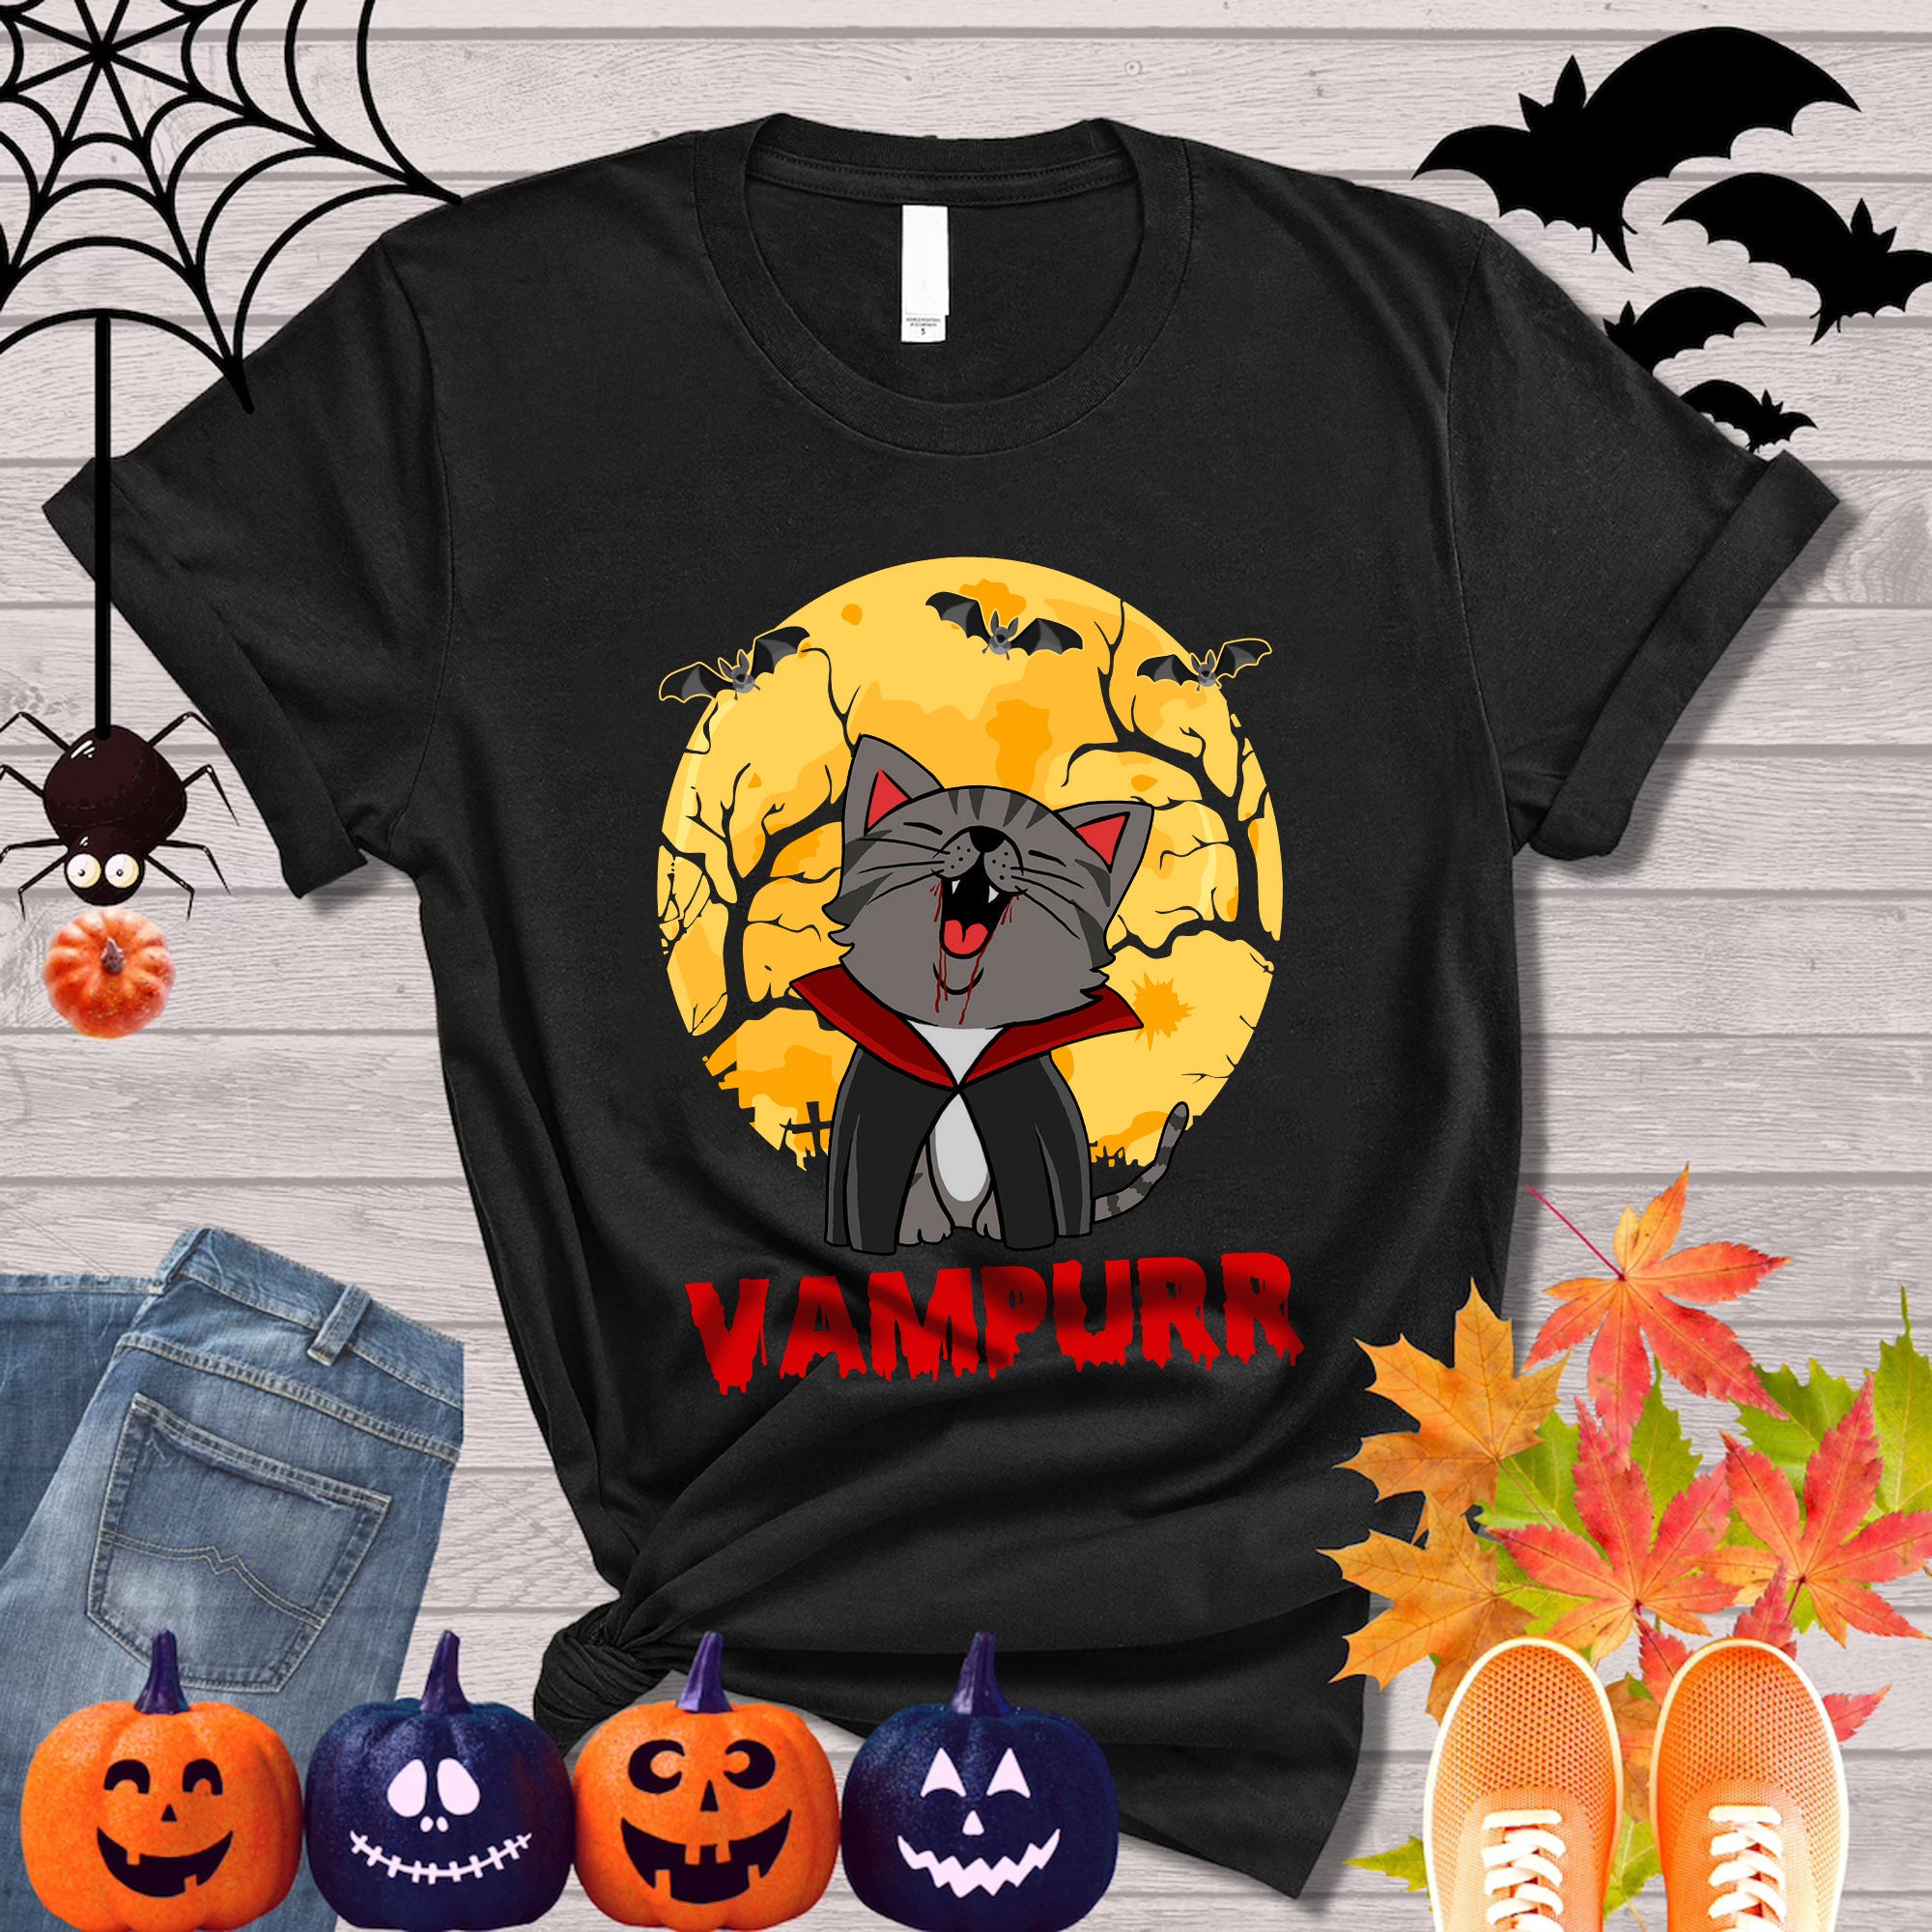 Vampurr Halloween T-shirt